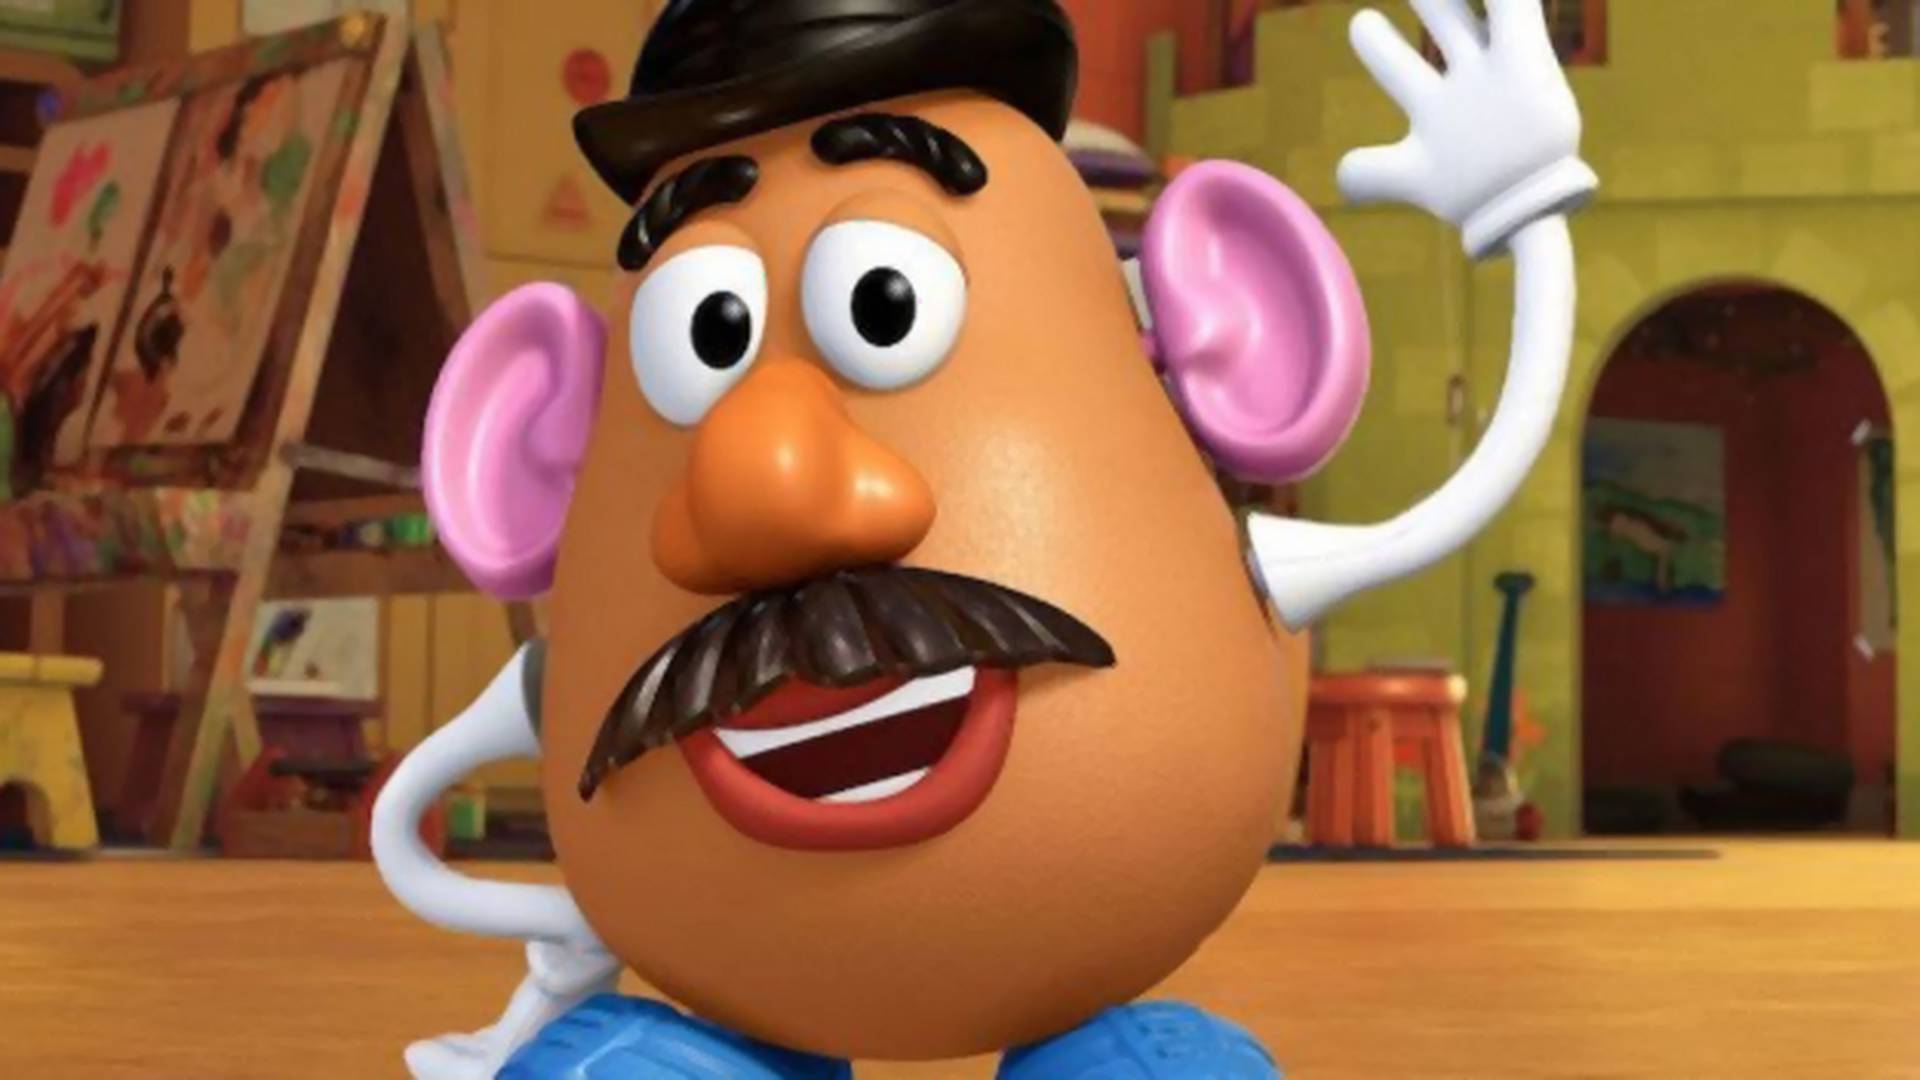 Zabawkowe Bulwy z Toy Story nie będą określane płciowo, ale Pan Bulwa zostanie Panem Bulwą